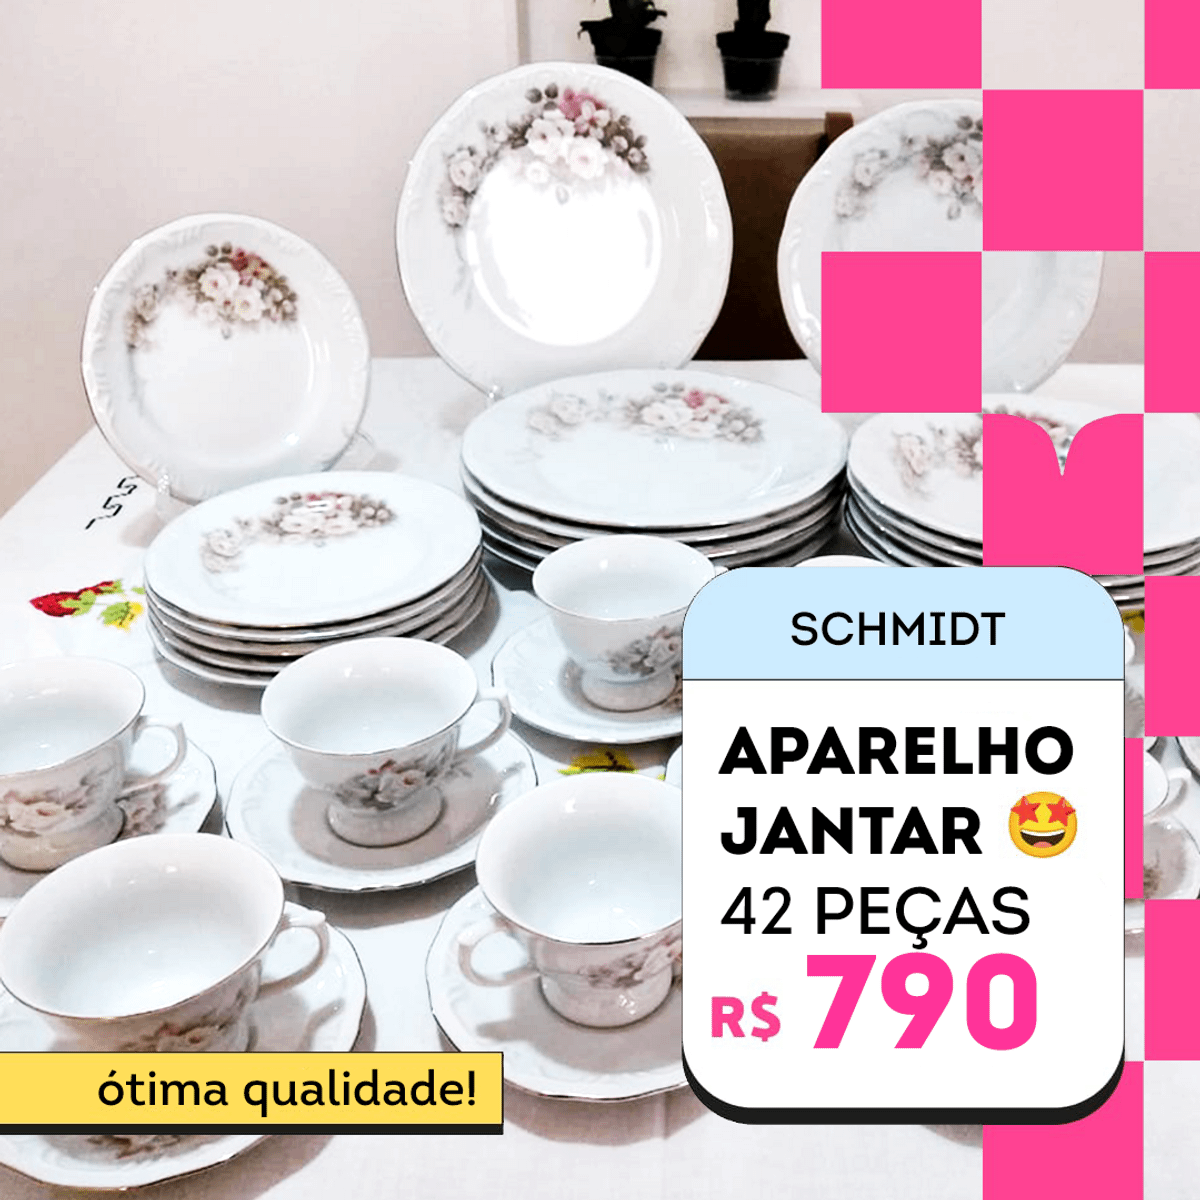 Aparelho Jantar, Chá e Café 42 Peças Porcelana Schmidt - Dec